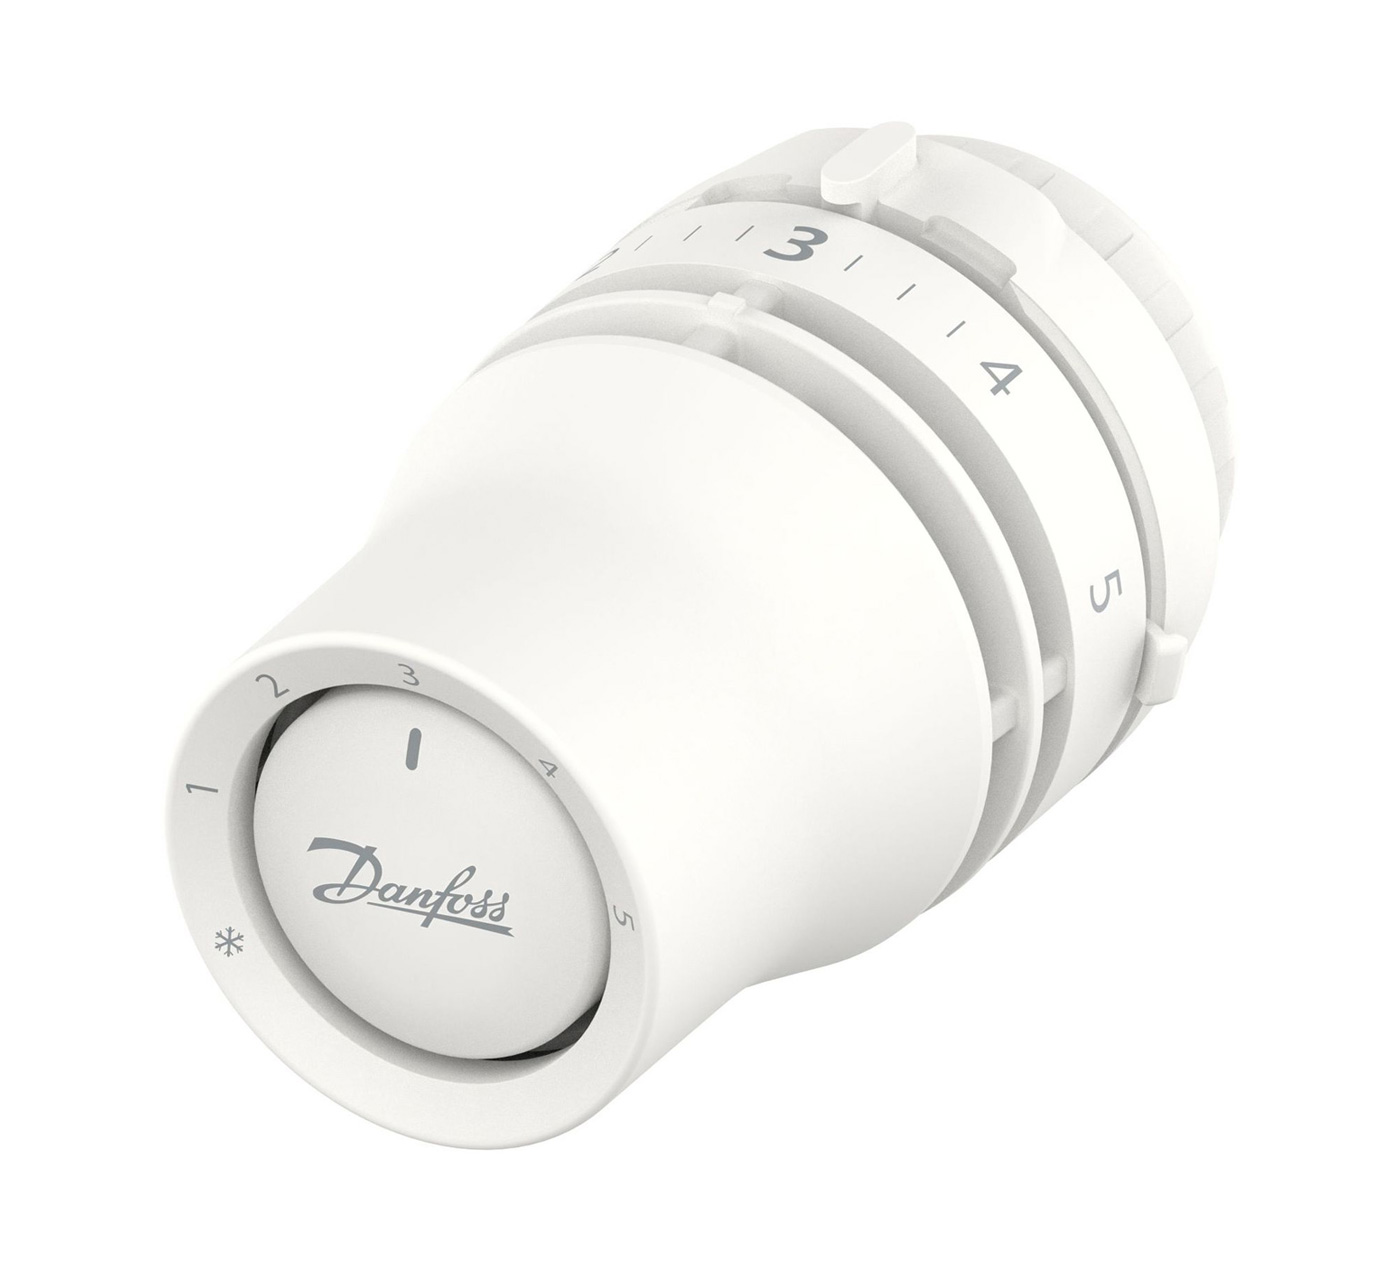 Danfoss REDIA RA 3380 termostatická hlavice se západkovým upevněním 8-28°C, bílá 015G3380